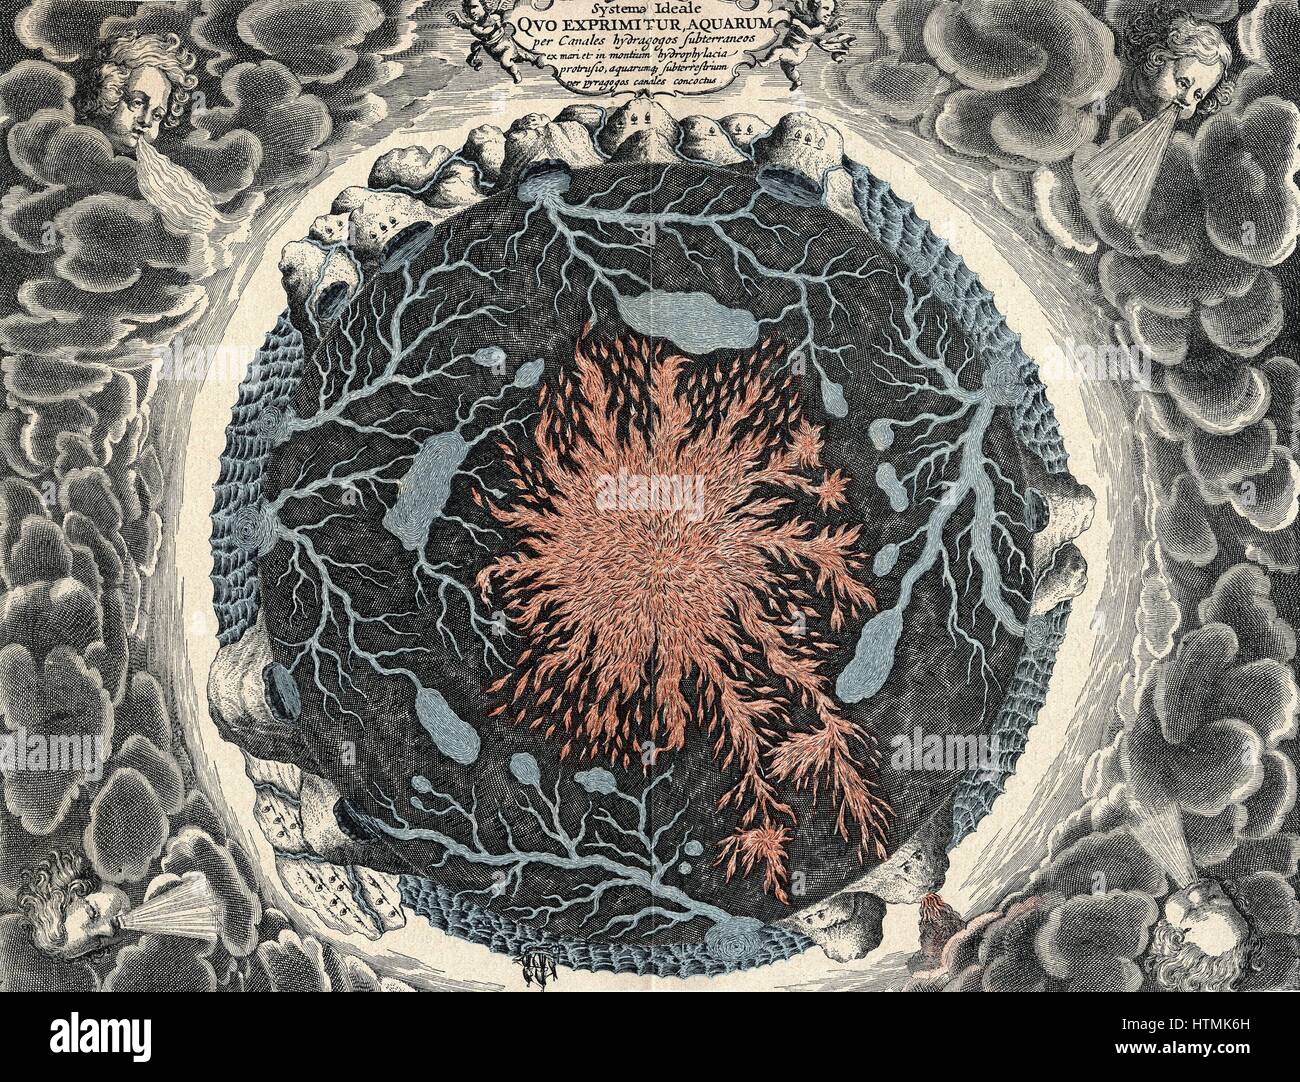 Vista transversal de la tierra, mostrando el fuego central y canales subterráneos vinculados a los océanos. Desde Athanasius Kircher "mundus" subterráneas, 1665 Foto de stock